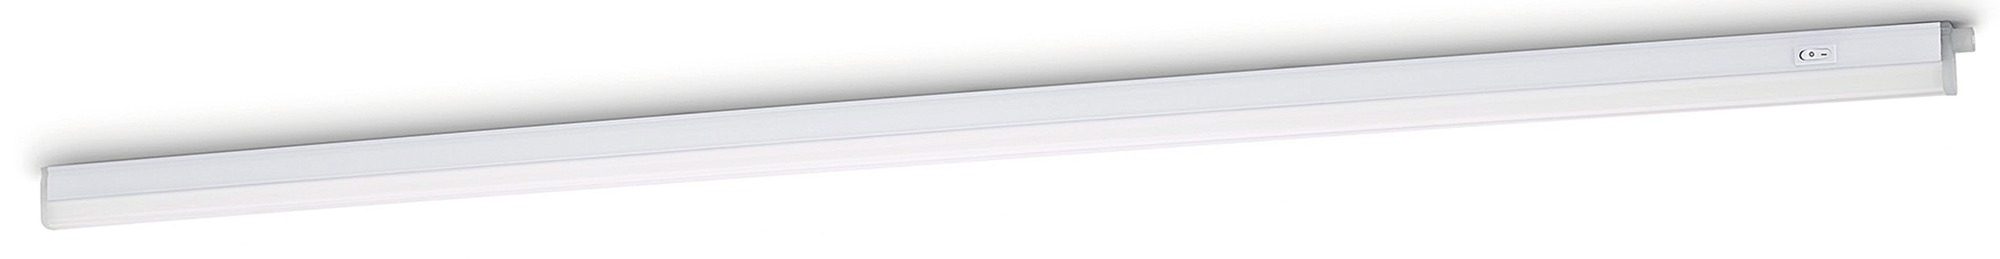 Réglette Linear LED 18 W Philips - Longueur 112 cm